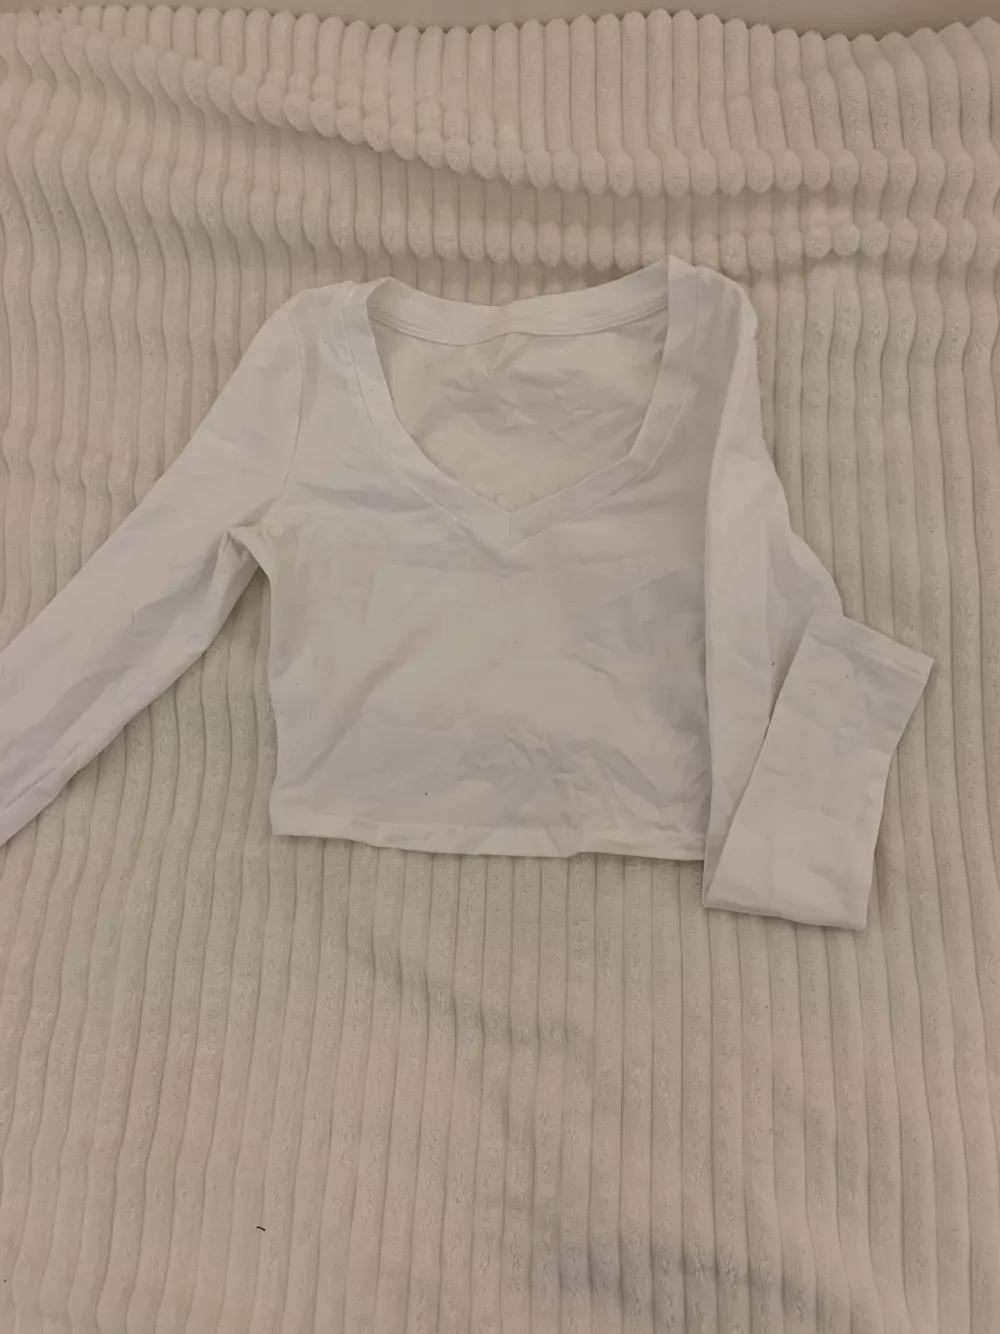 Basic vit cropped tröja med inga fläckar eller hål.. Toppar.